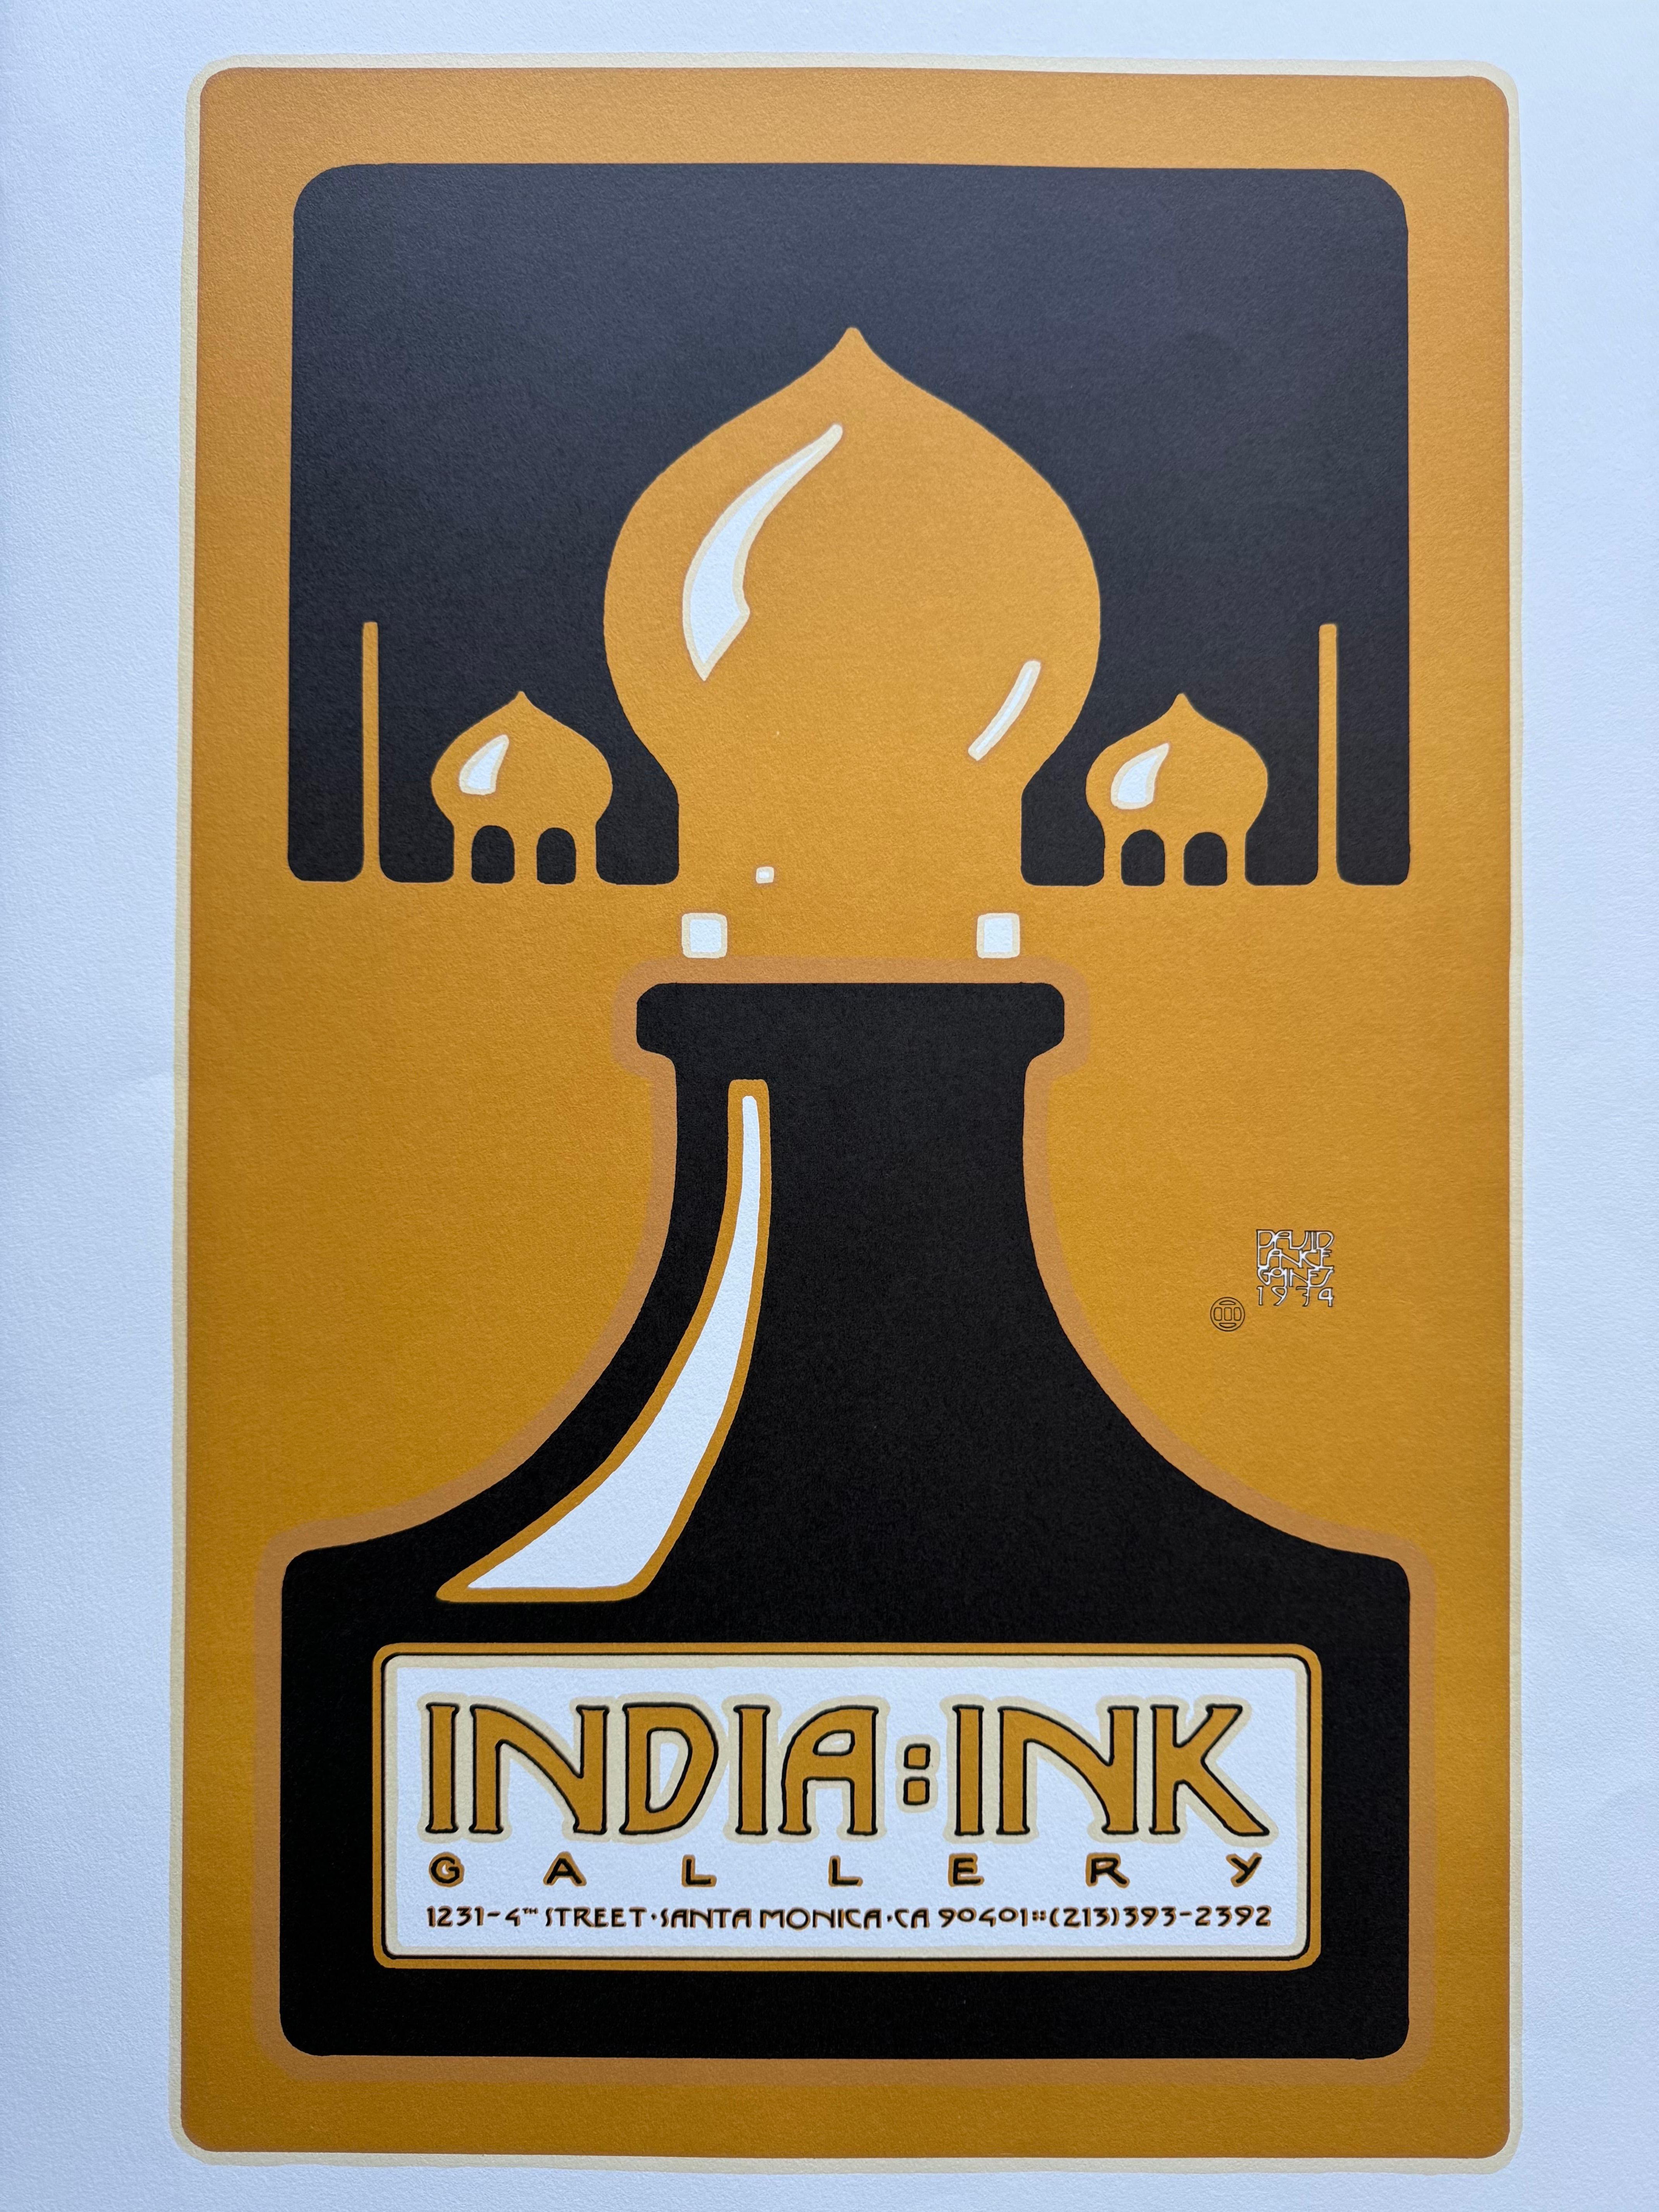 Schöner Druck von David Lance Goines für die India Ink Gallery in Los Angeles. Dies ist die 2. Auflage, gedruckt auf schwerem Papier im Jahr 1974. 

Dieser Druck ist in sehr gutem Zustand, siehe Bilder für